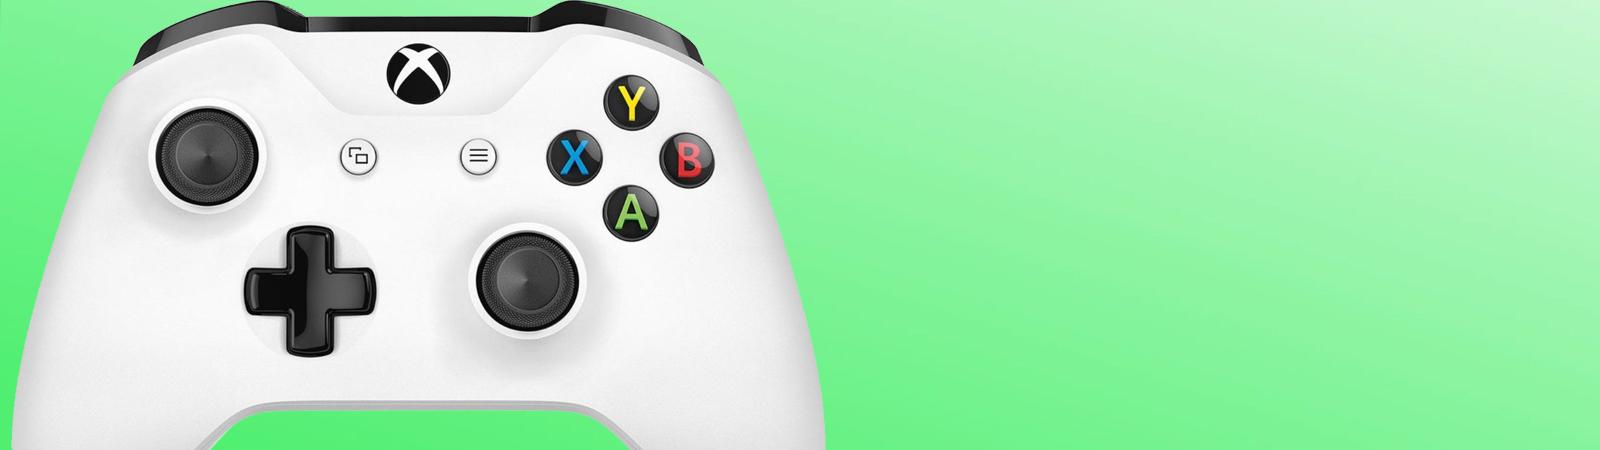 Middag eten Gehoorzaamheid Vergelijken Xbox One consoles, Xbox One games & accessoires kopen bij GooHoo!